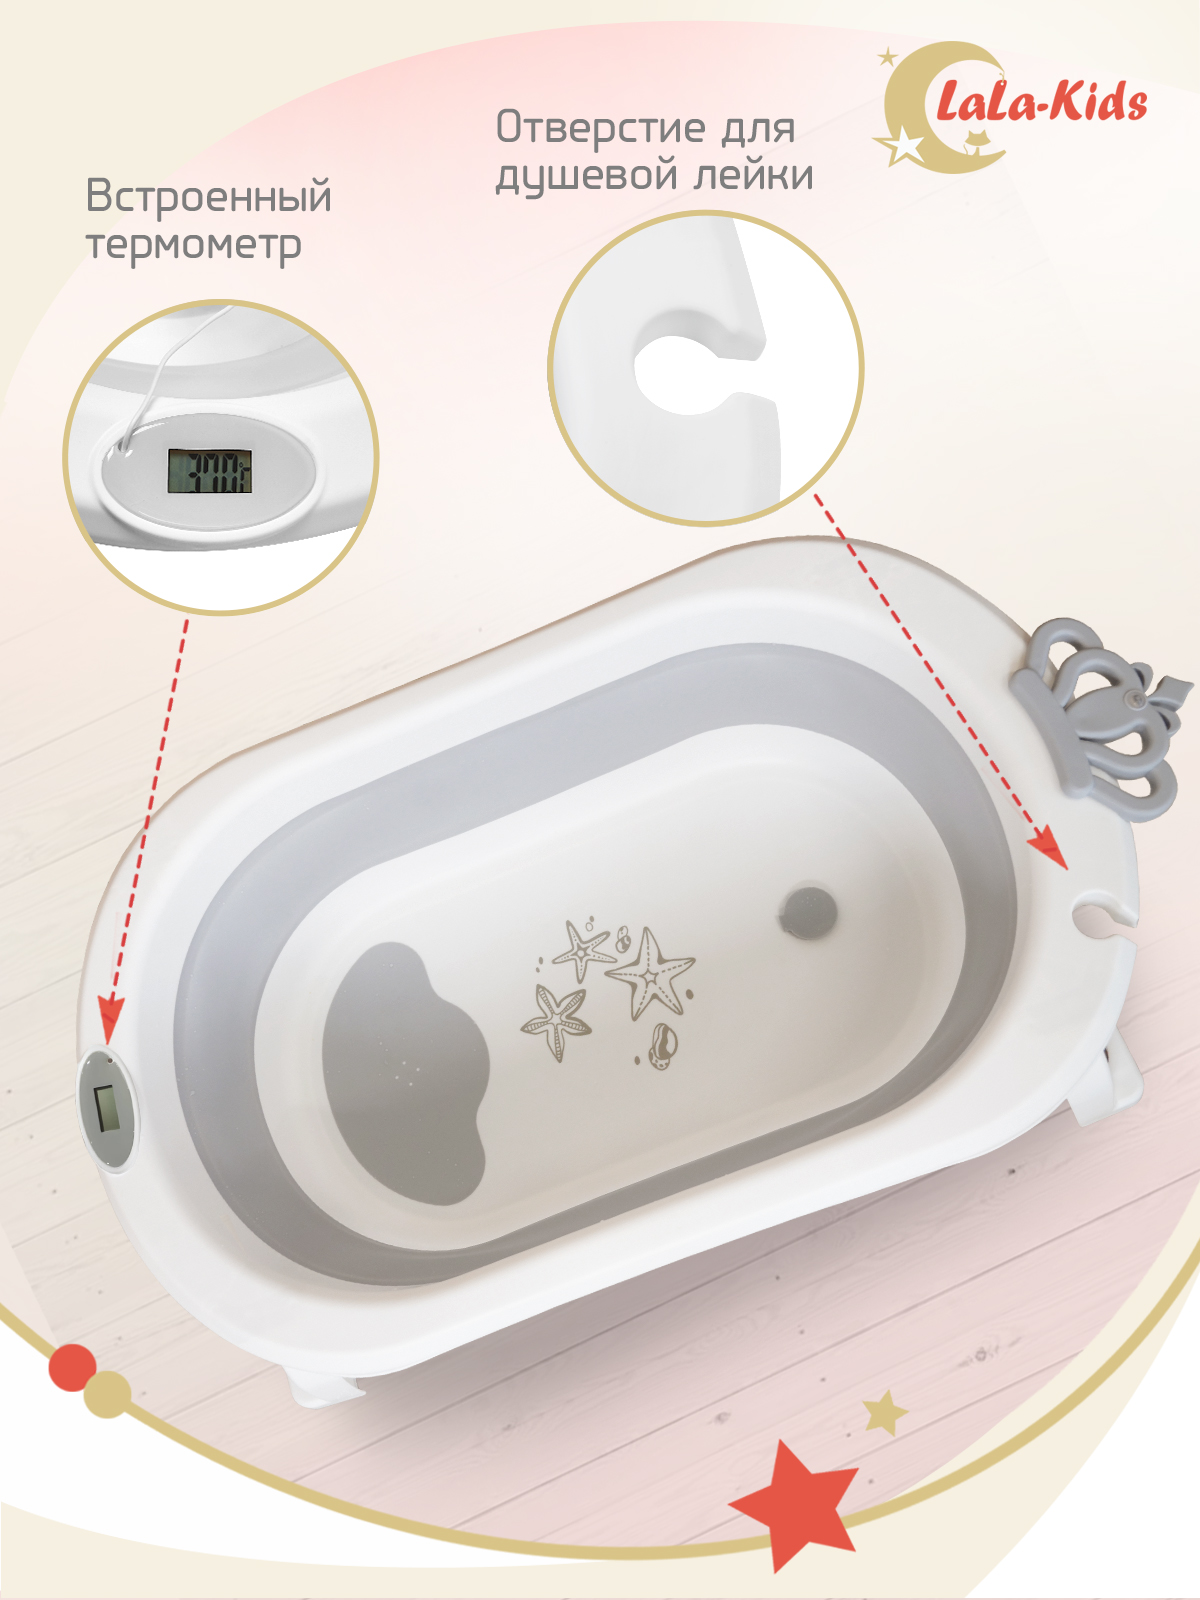 Детская ванночка с термометром LaLa-Kids складная с матрасиком для купания новорожденных - фото 6